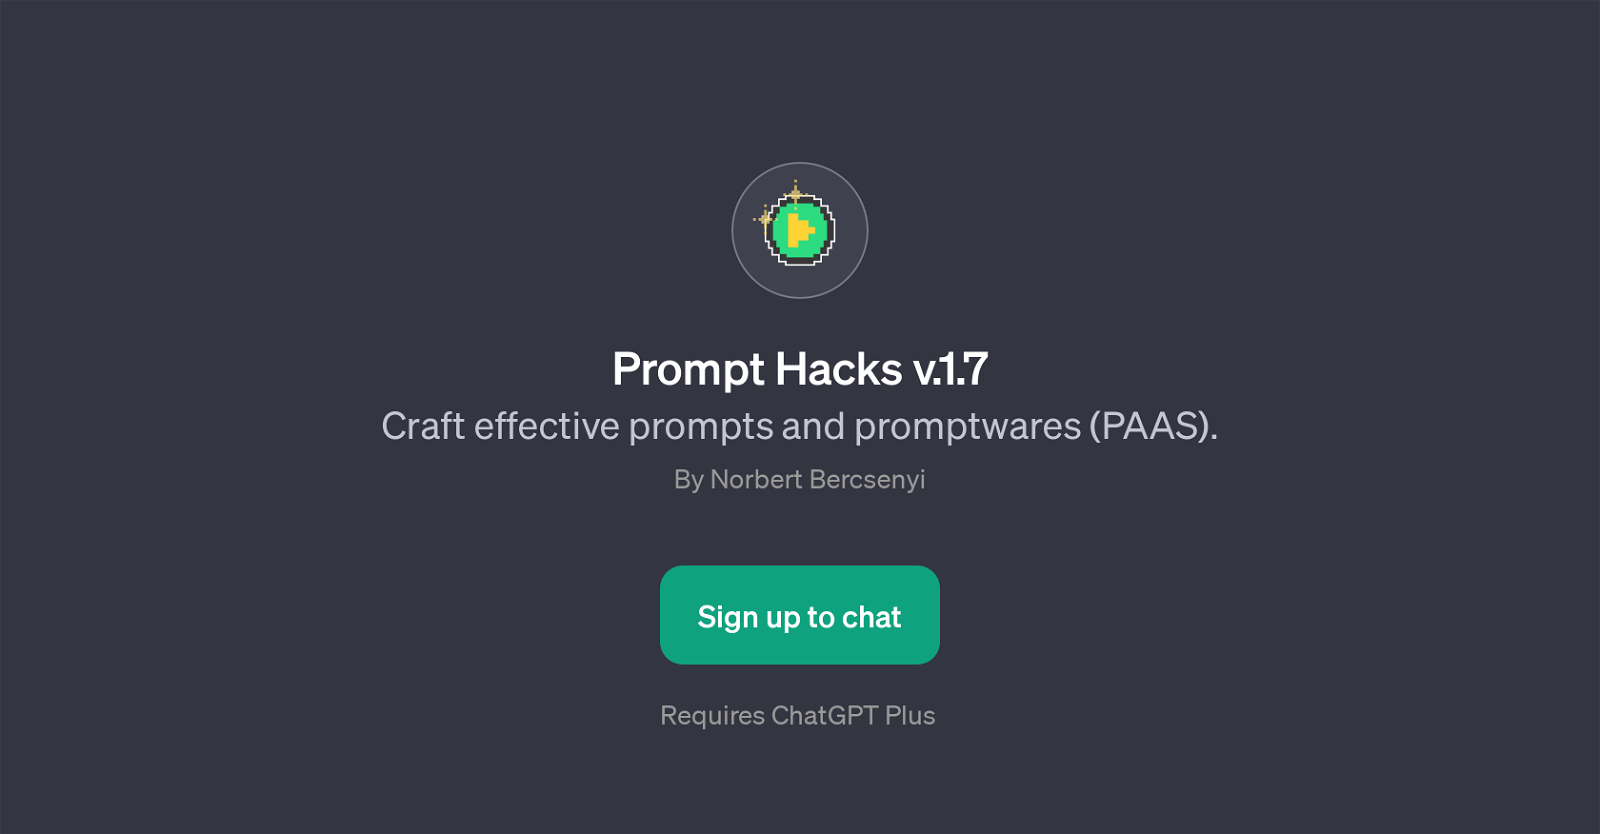 Prompt Hacks v.1.7 website